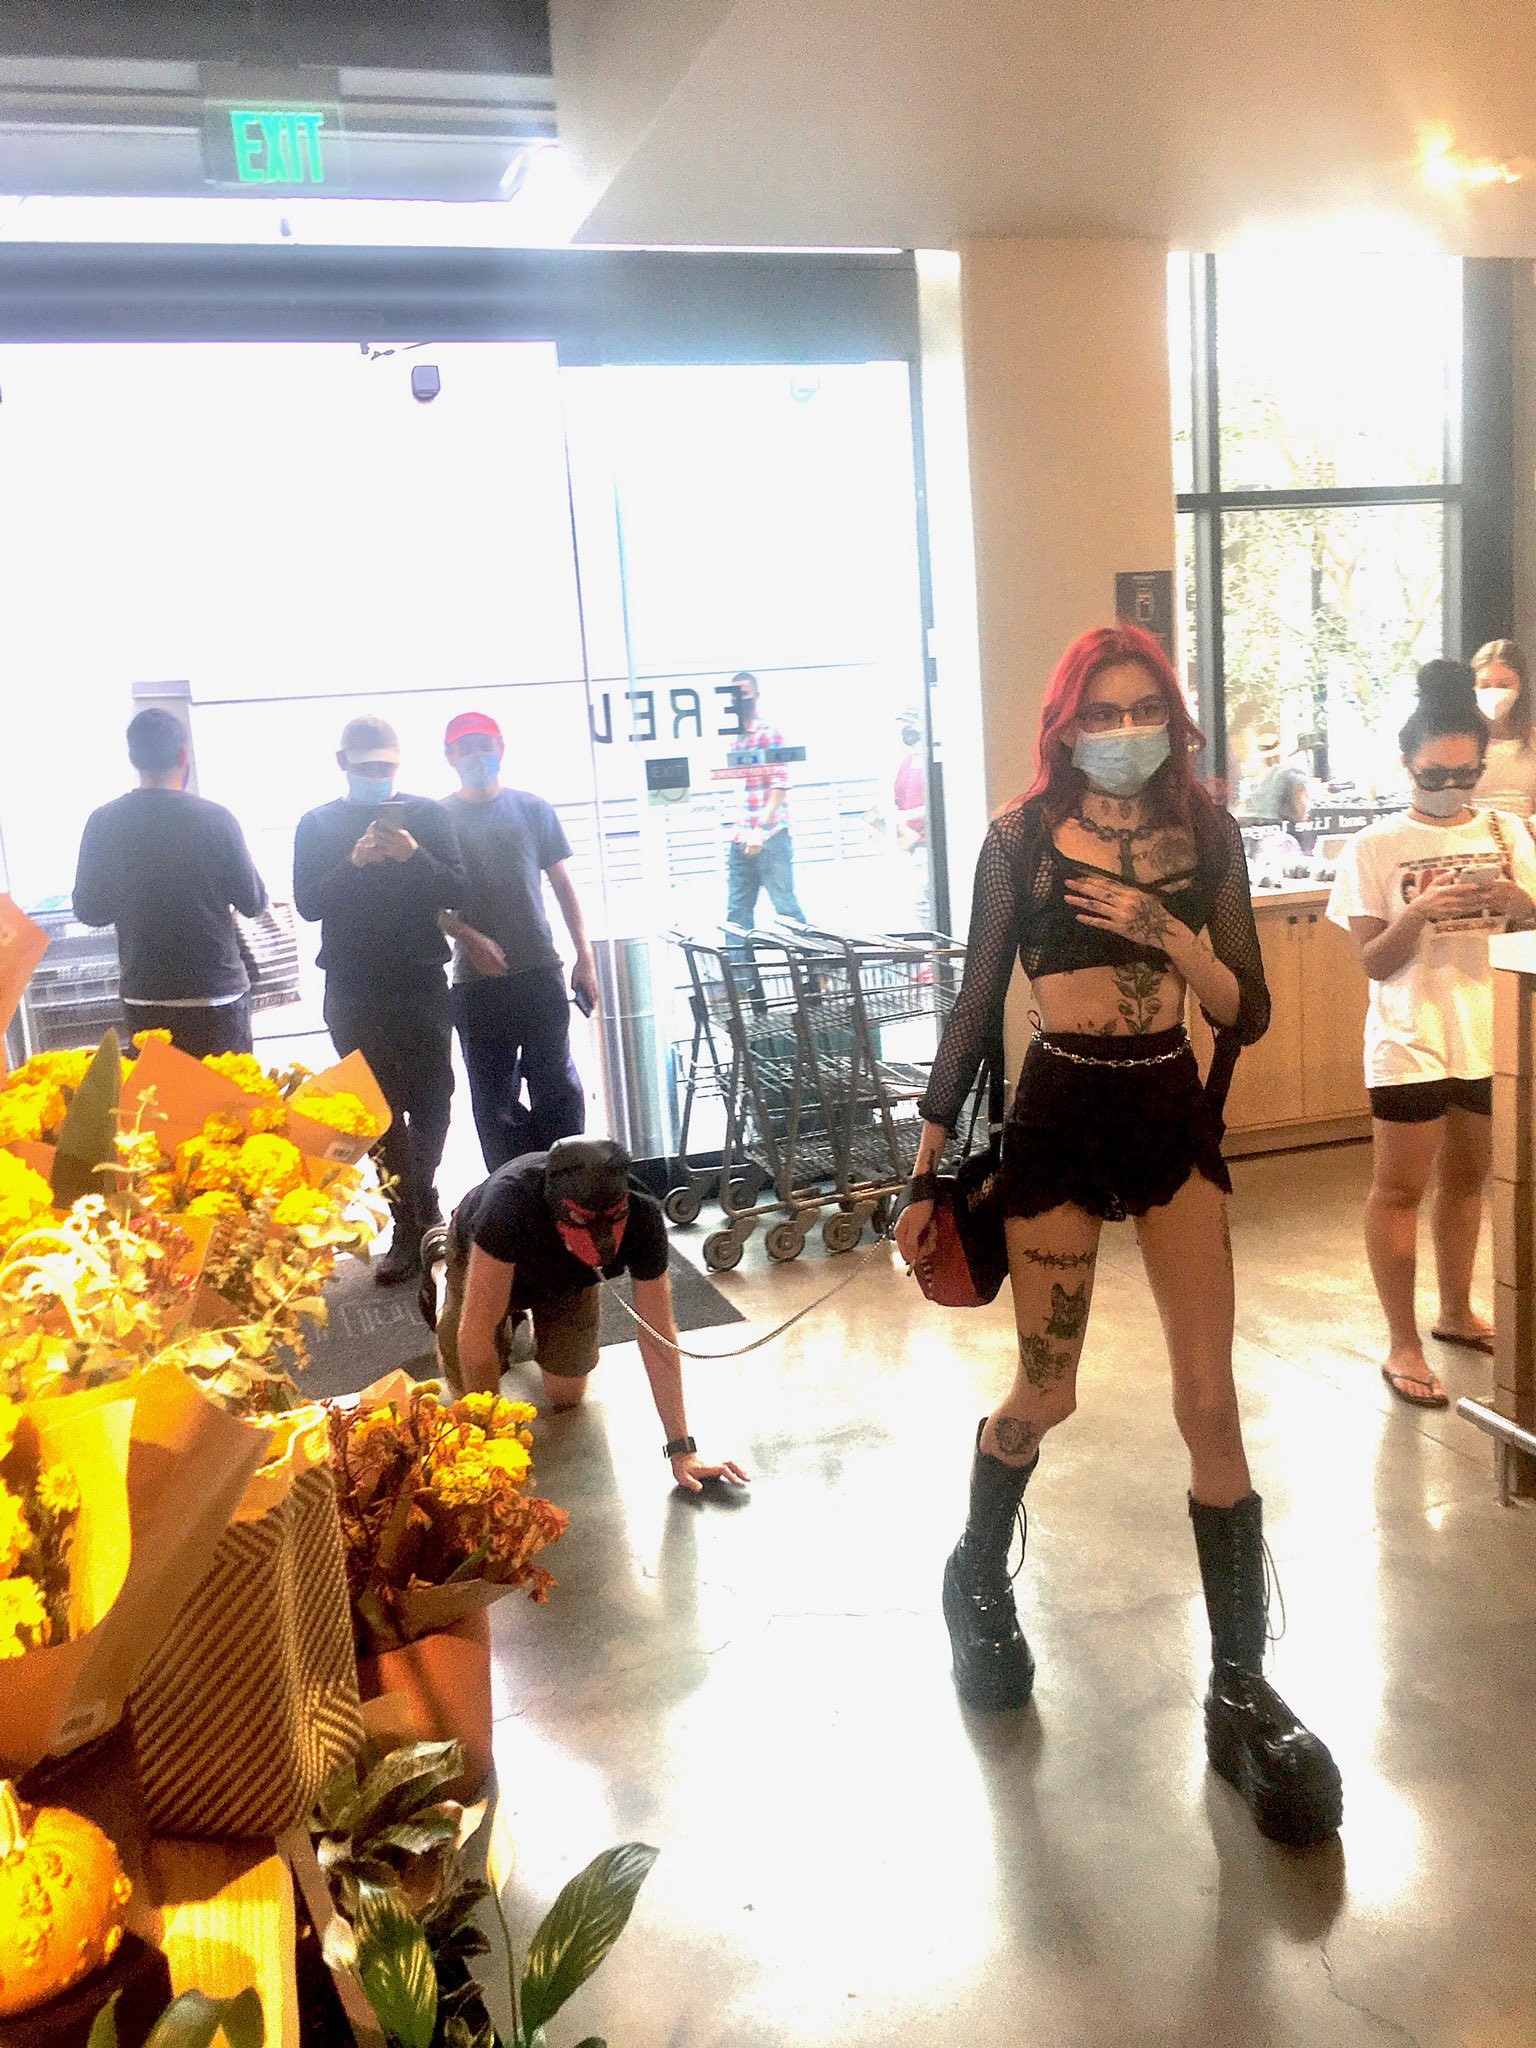 Dominatrix leva homem de coleira ao mercado em Los Angeles e foto viraliza nas redes (Foto: Reprodução/ Twitter)